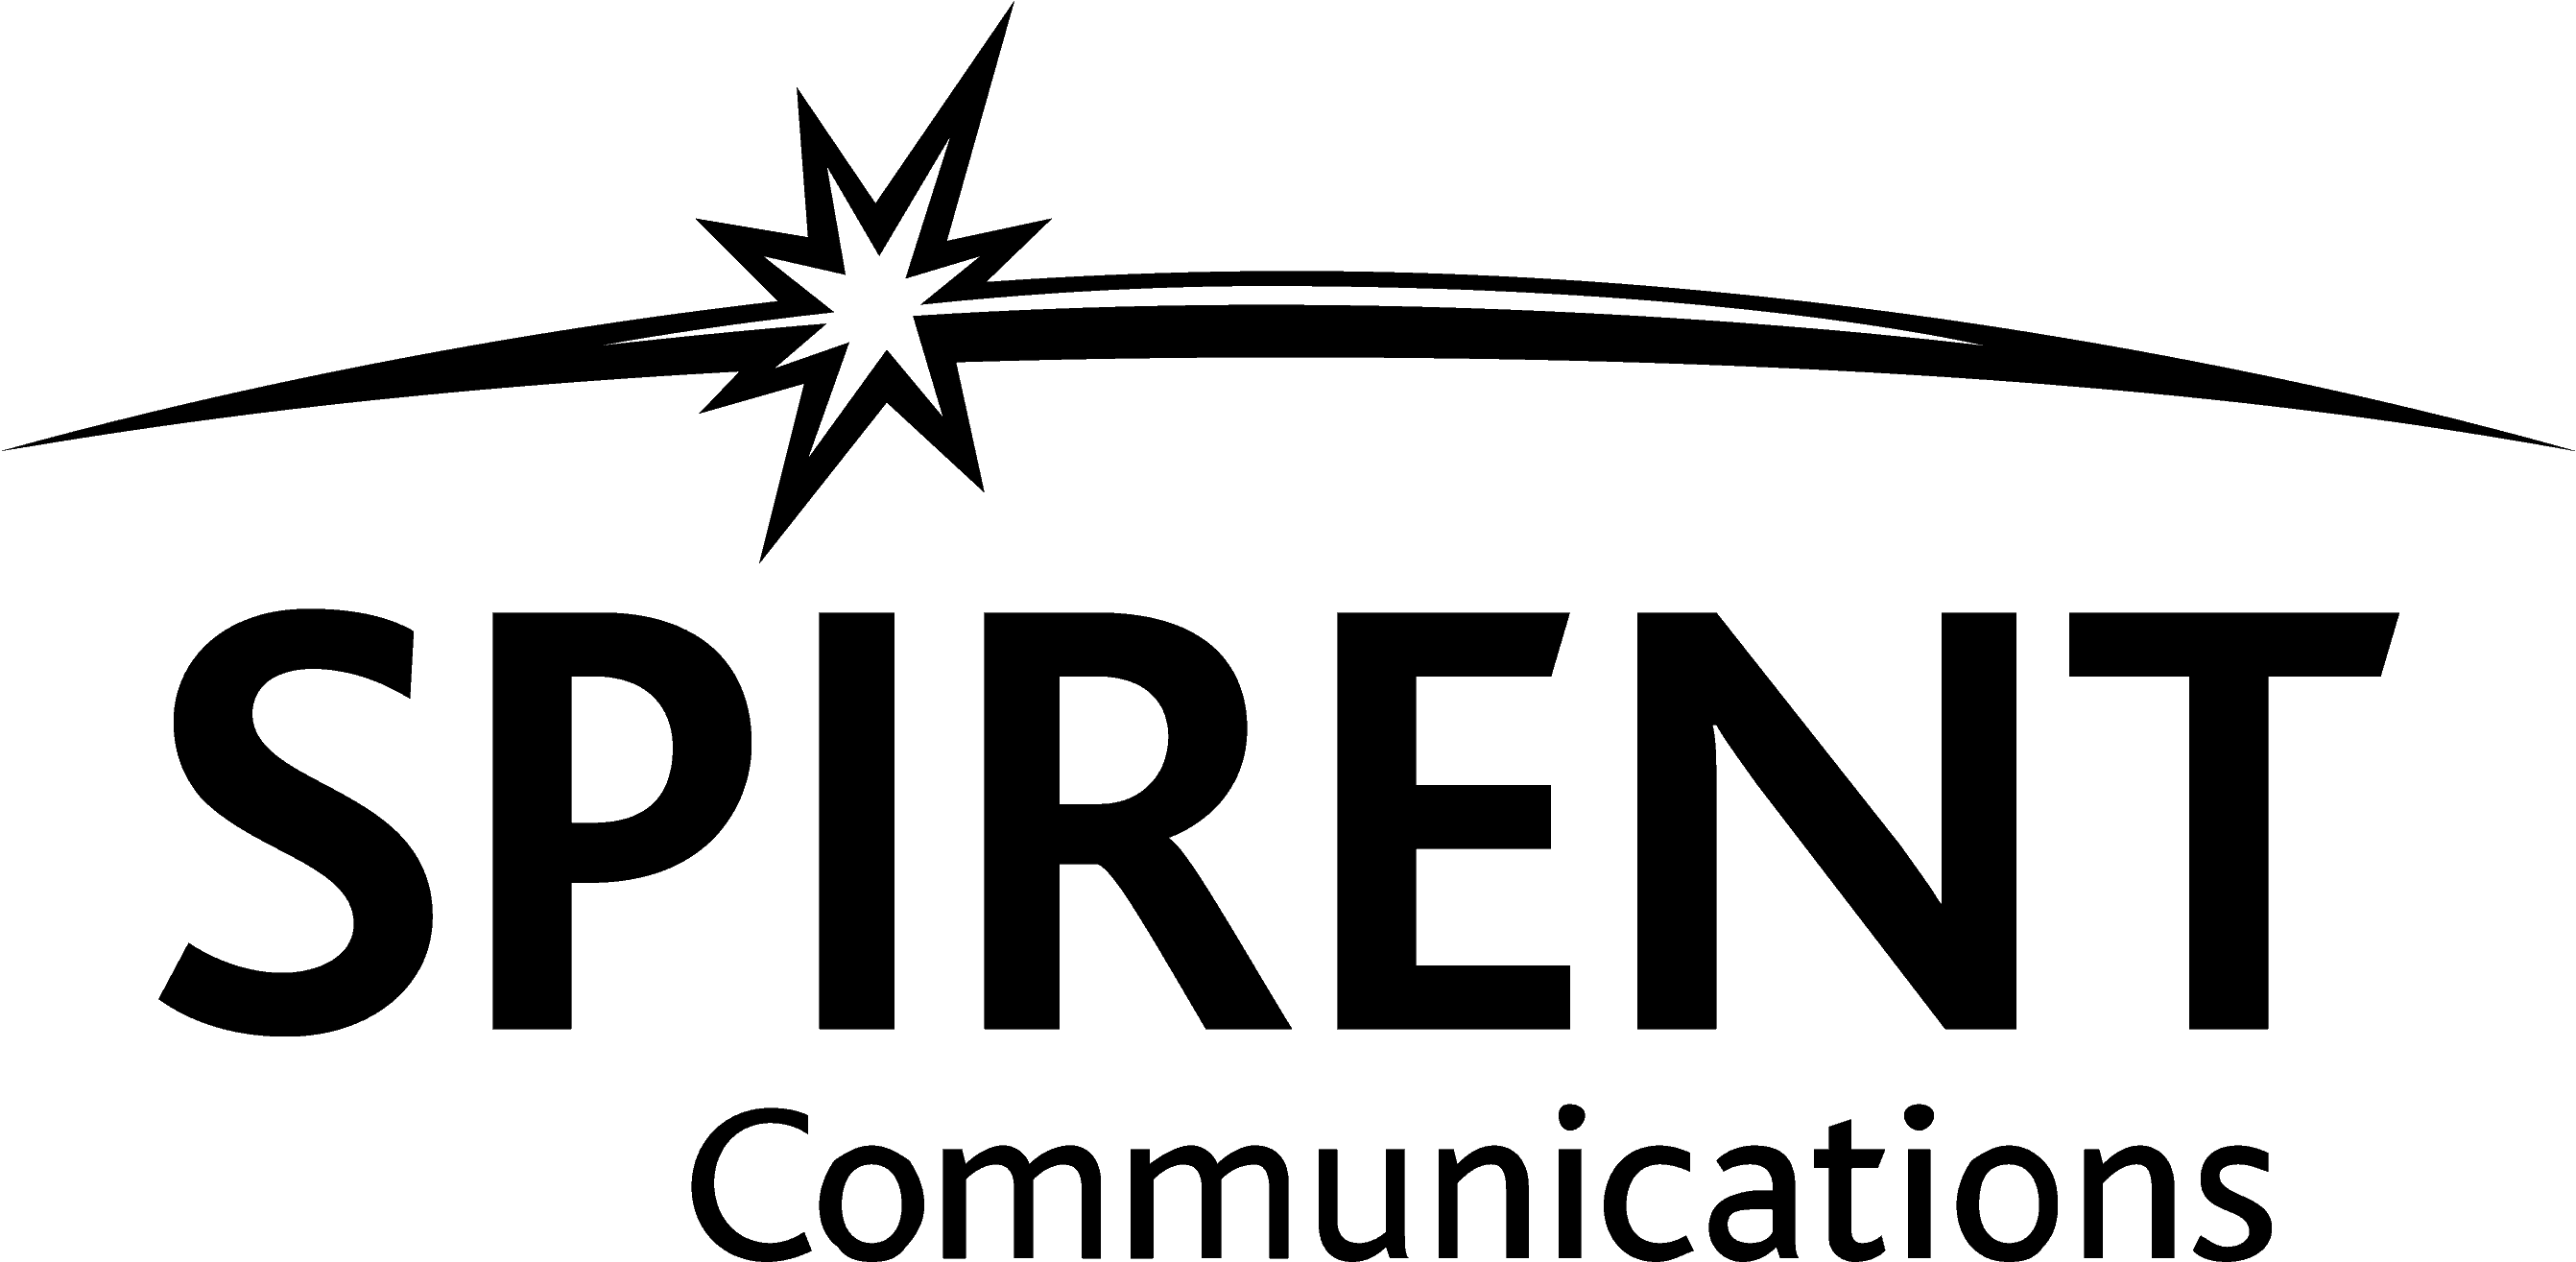 Spirent Communications logo in black